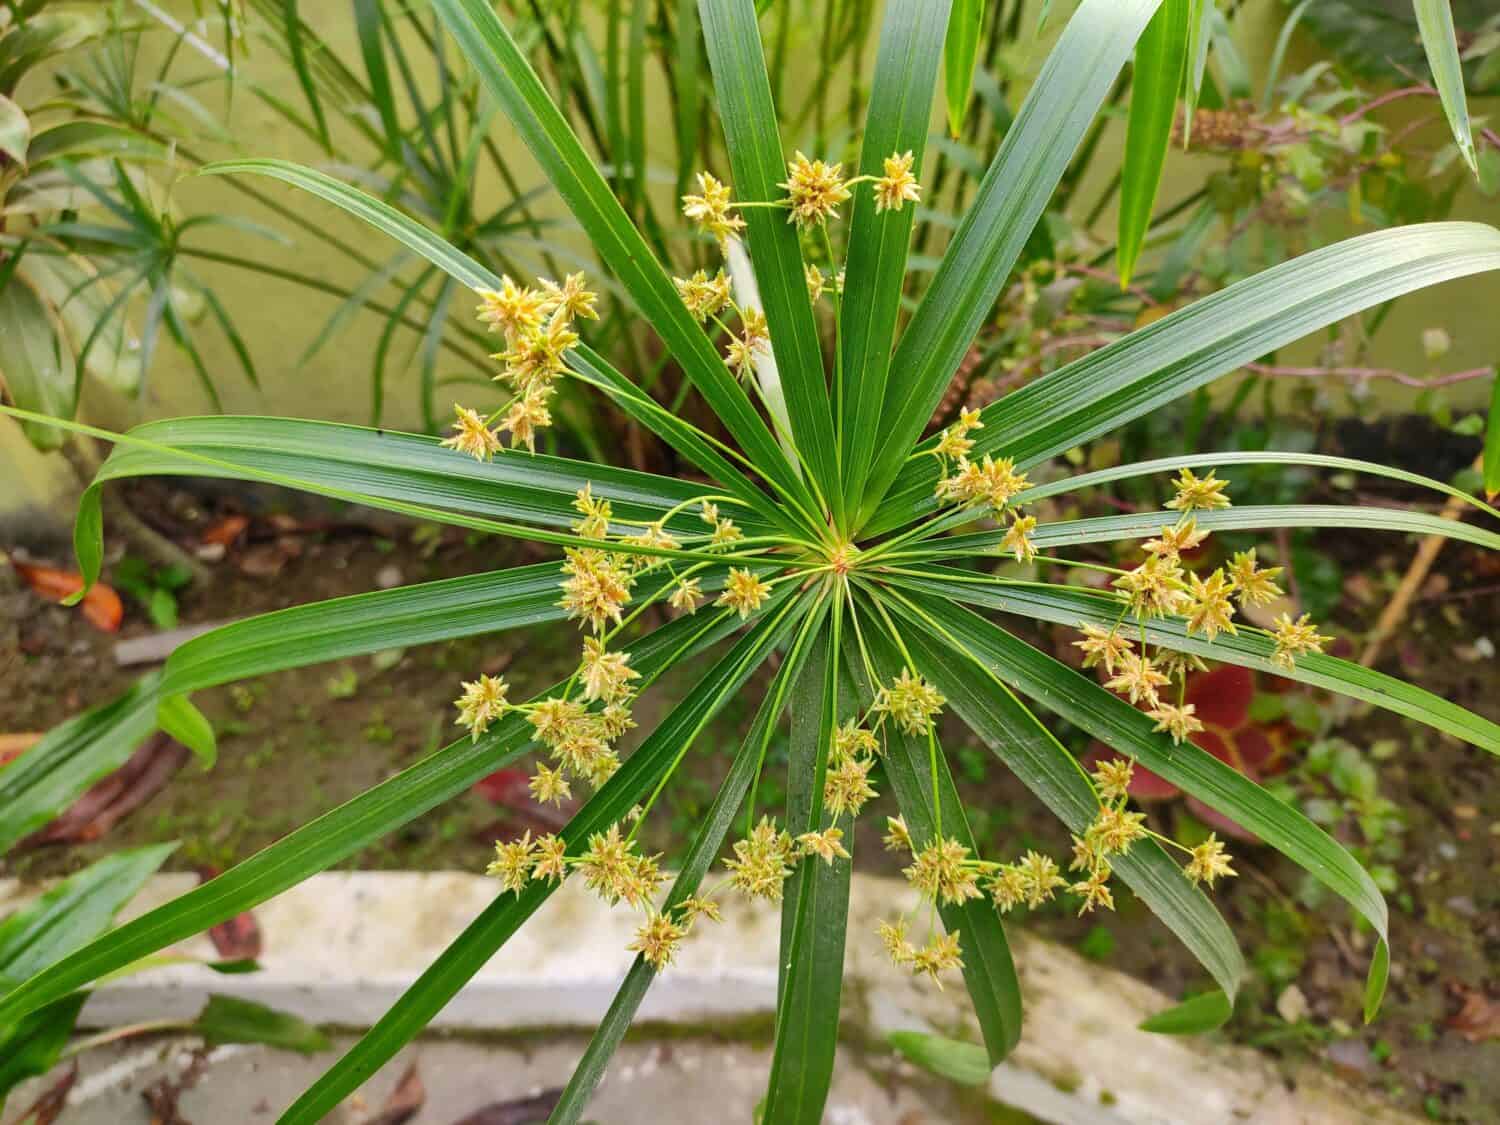 Ornamental plant - Cyperus alternifolius. Family - Cyperaceae. Common name- umbrella papyrus, umbrella sedge or umbrella palm.